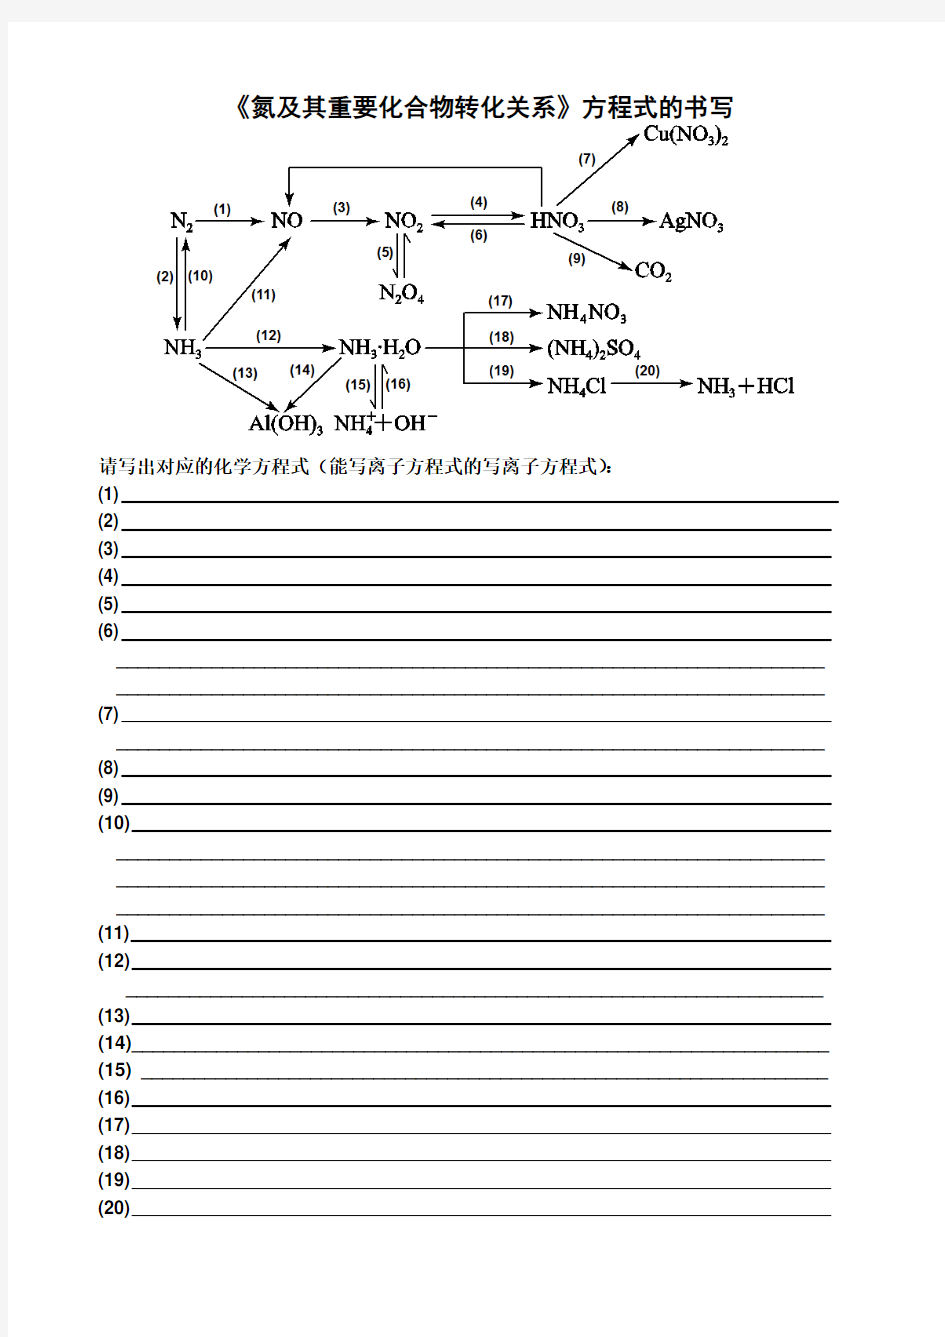 《氮及其重要化合物转化关系》方程式的书写